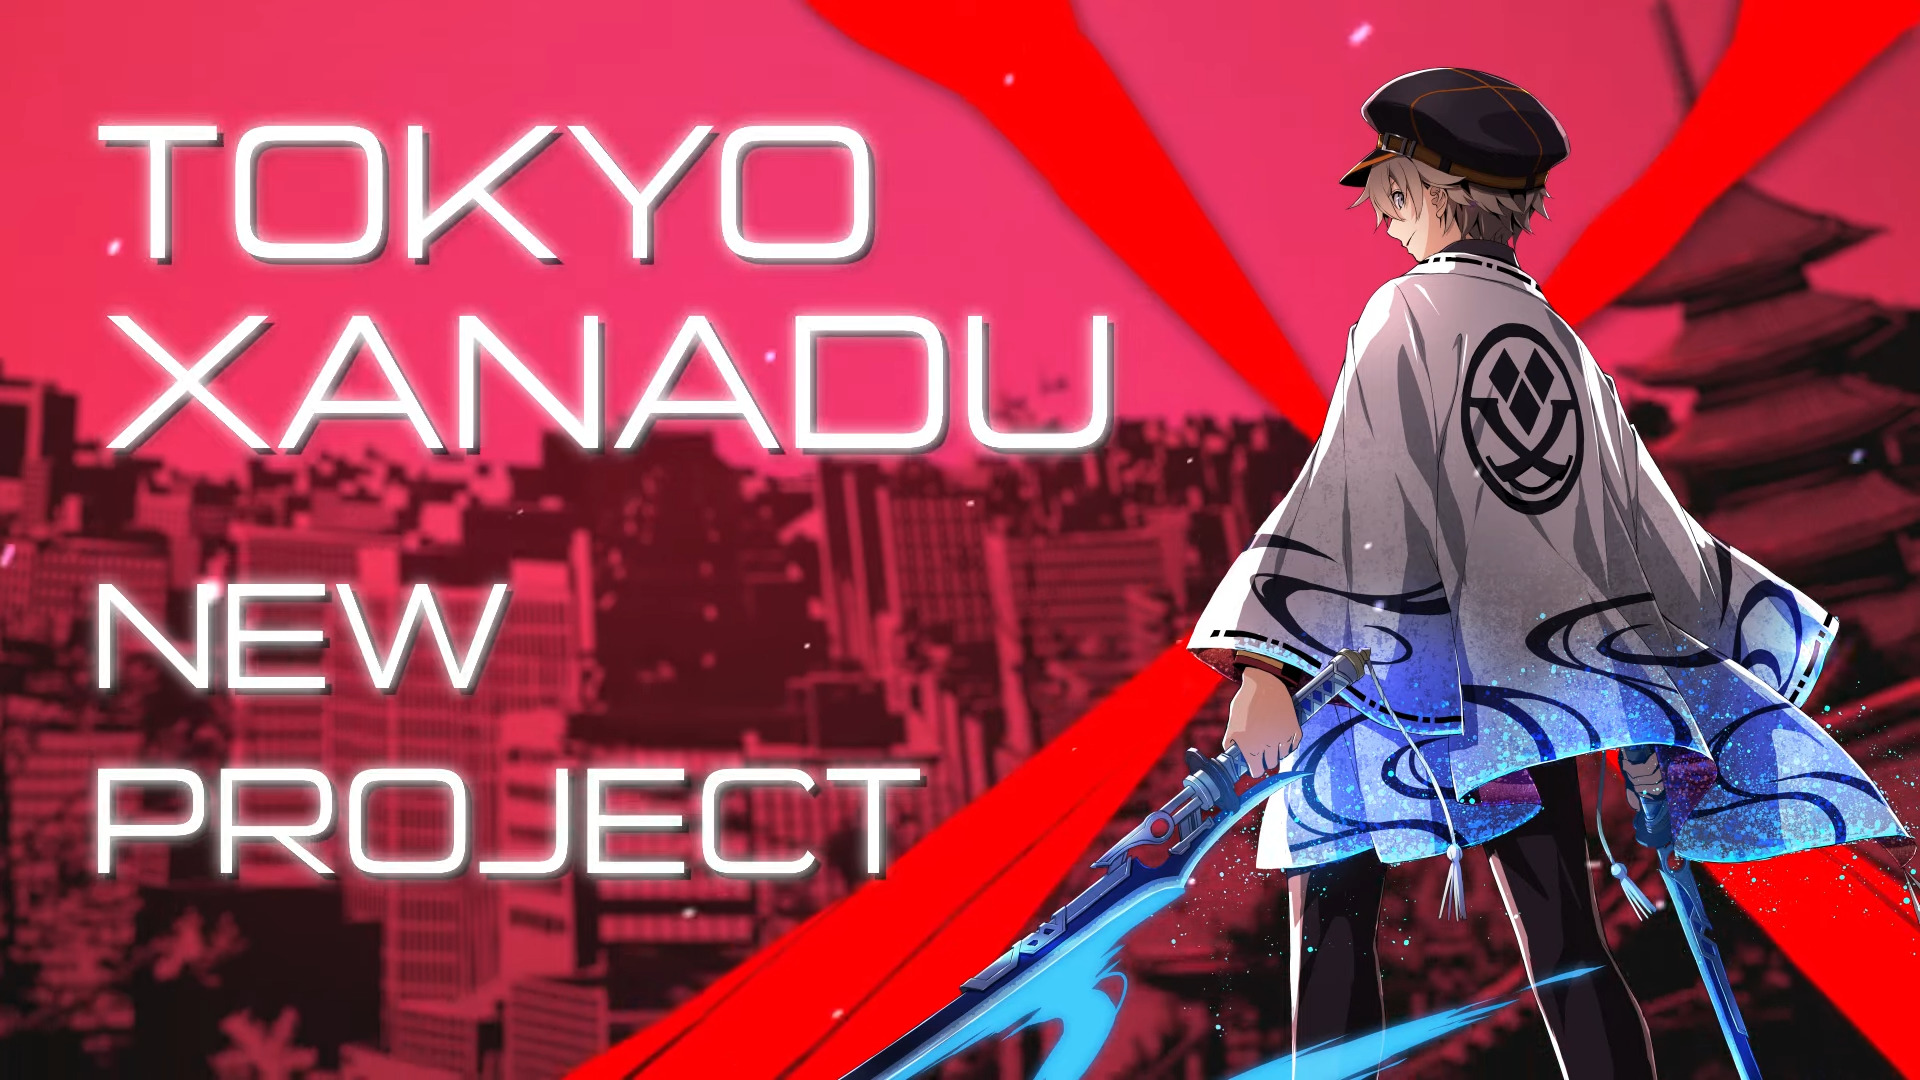 Falcom Studio announces Tokyo Xanadu New Project